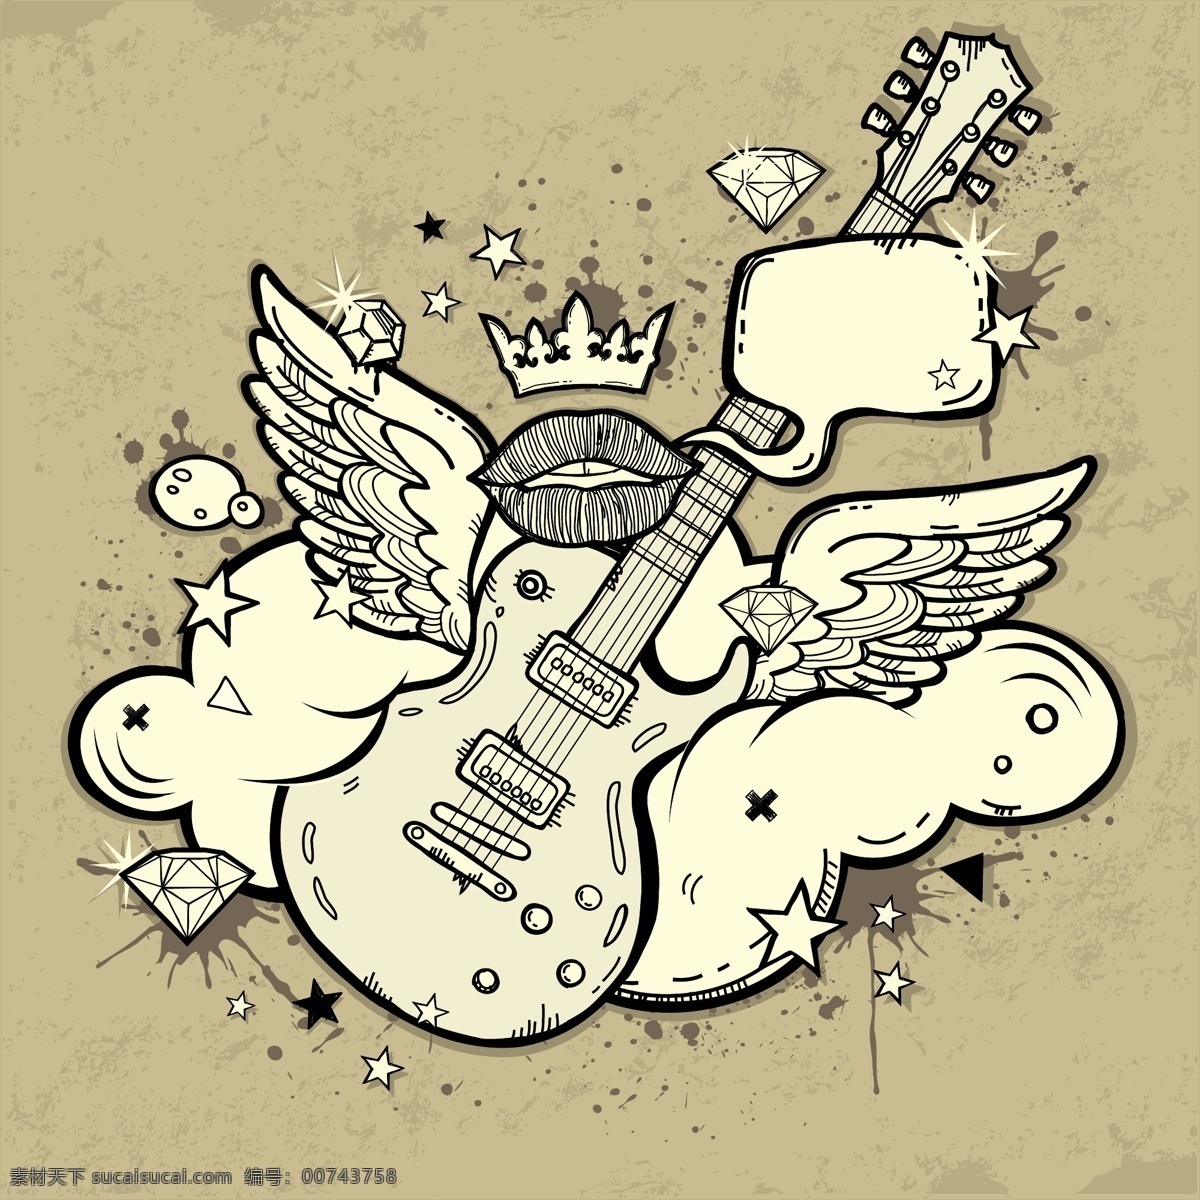 飞翔 吉他 矢量图 云朵 麦克风 翅膀 双翼 吉他乐器 摇滚音乐 音乐海报 影音娱乐 生活百科 矢量素材 白色